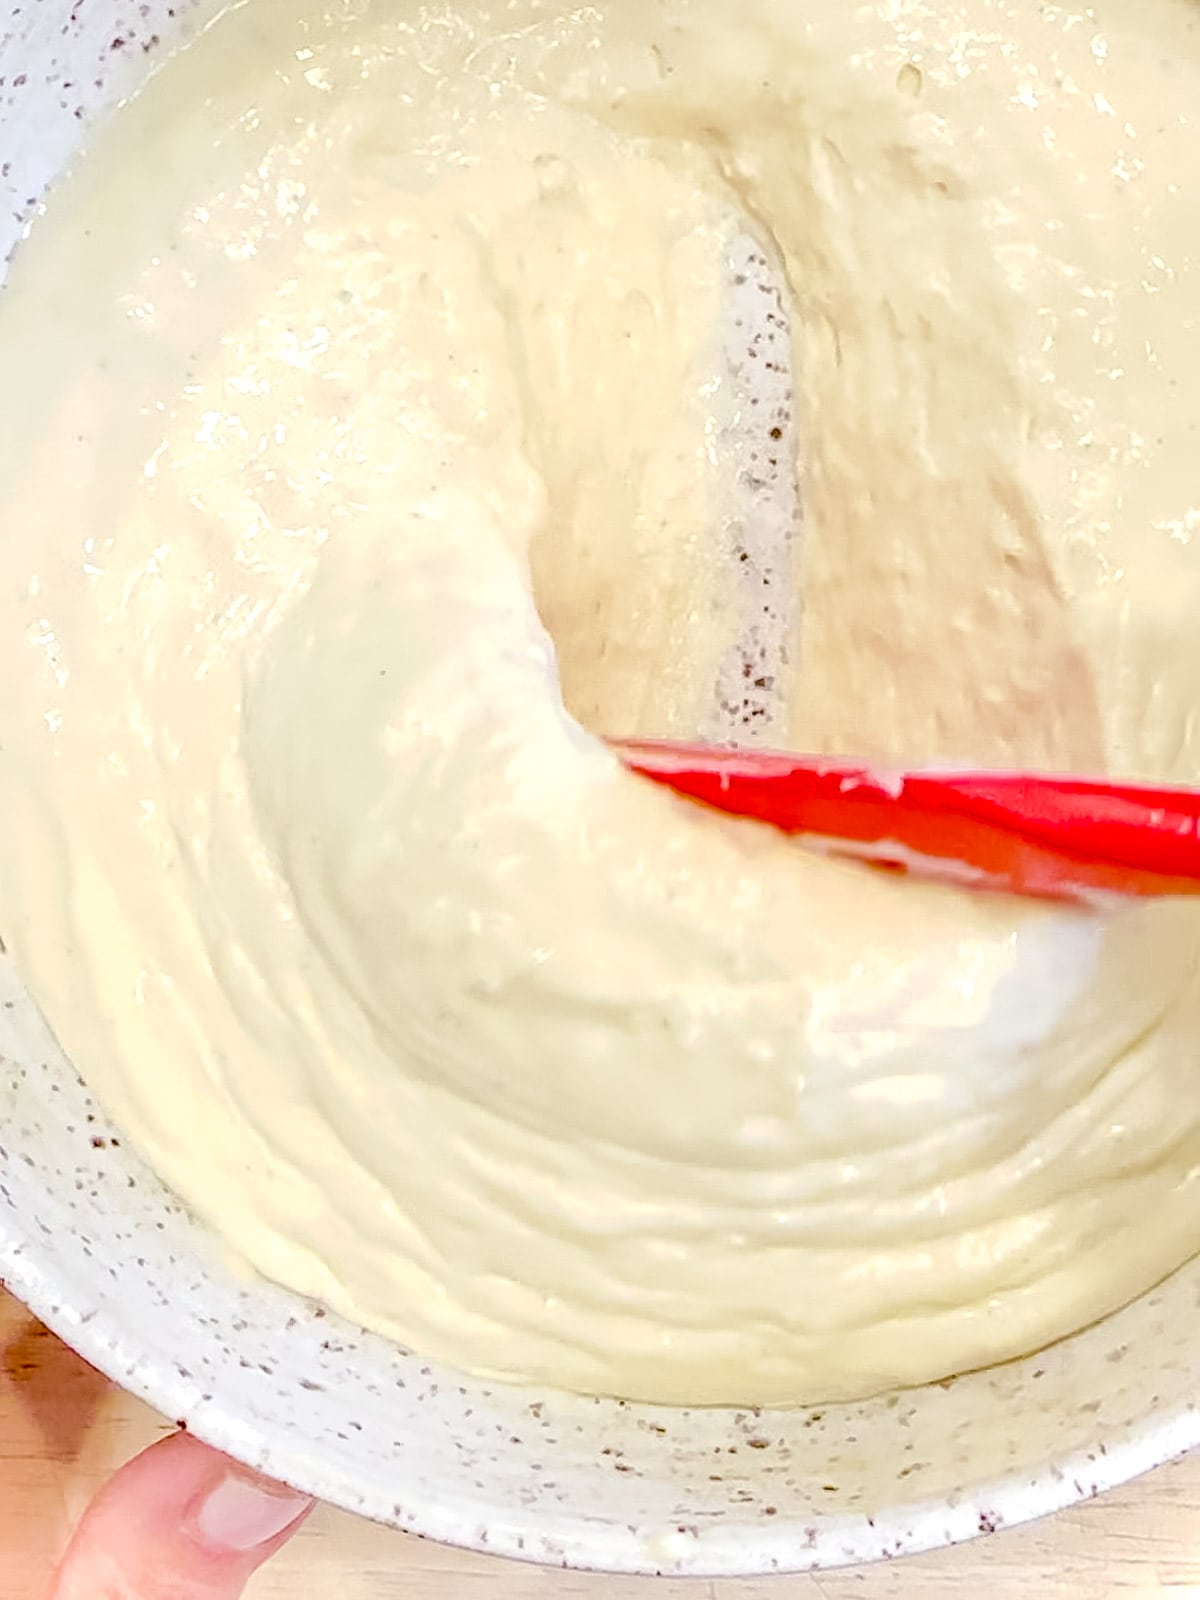 Mixing yogurt pancake batter.